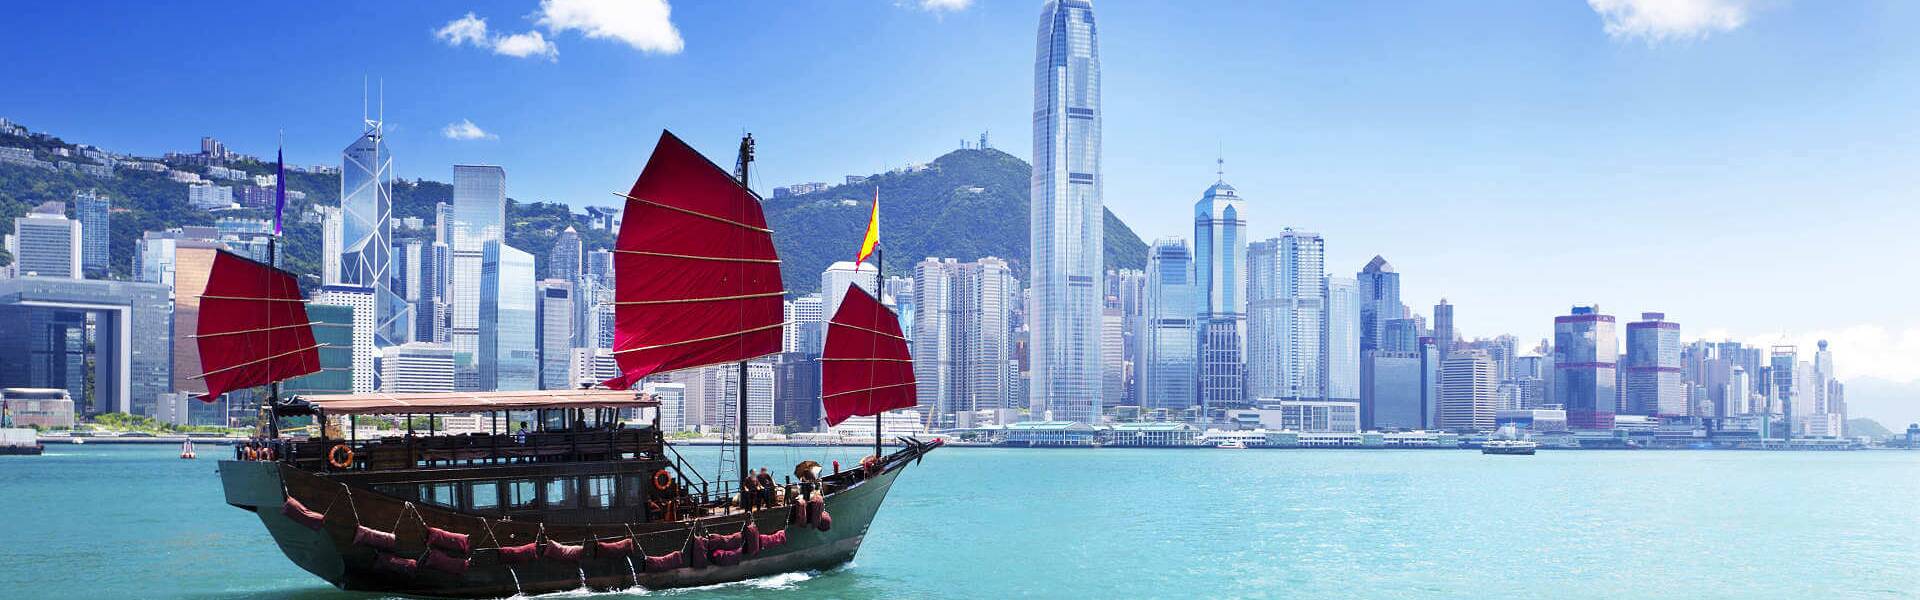 Hongkong ist eine Stadt, die vor Energie und Leben pulsiert. Hier findest du alle wichtigen Infos über diese aufregende Stadt